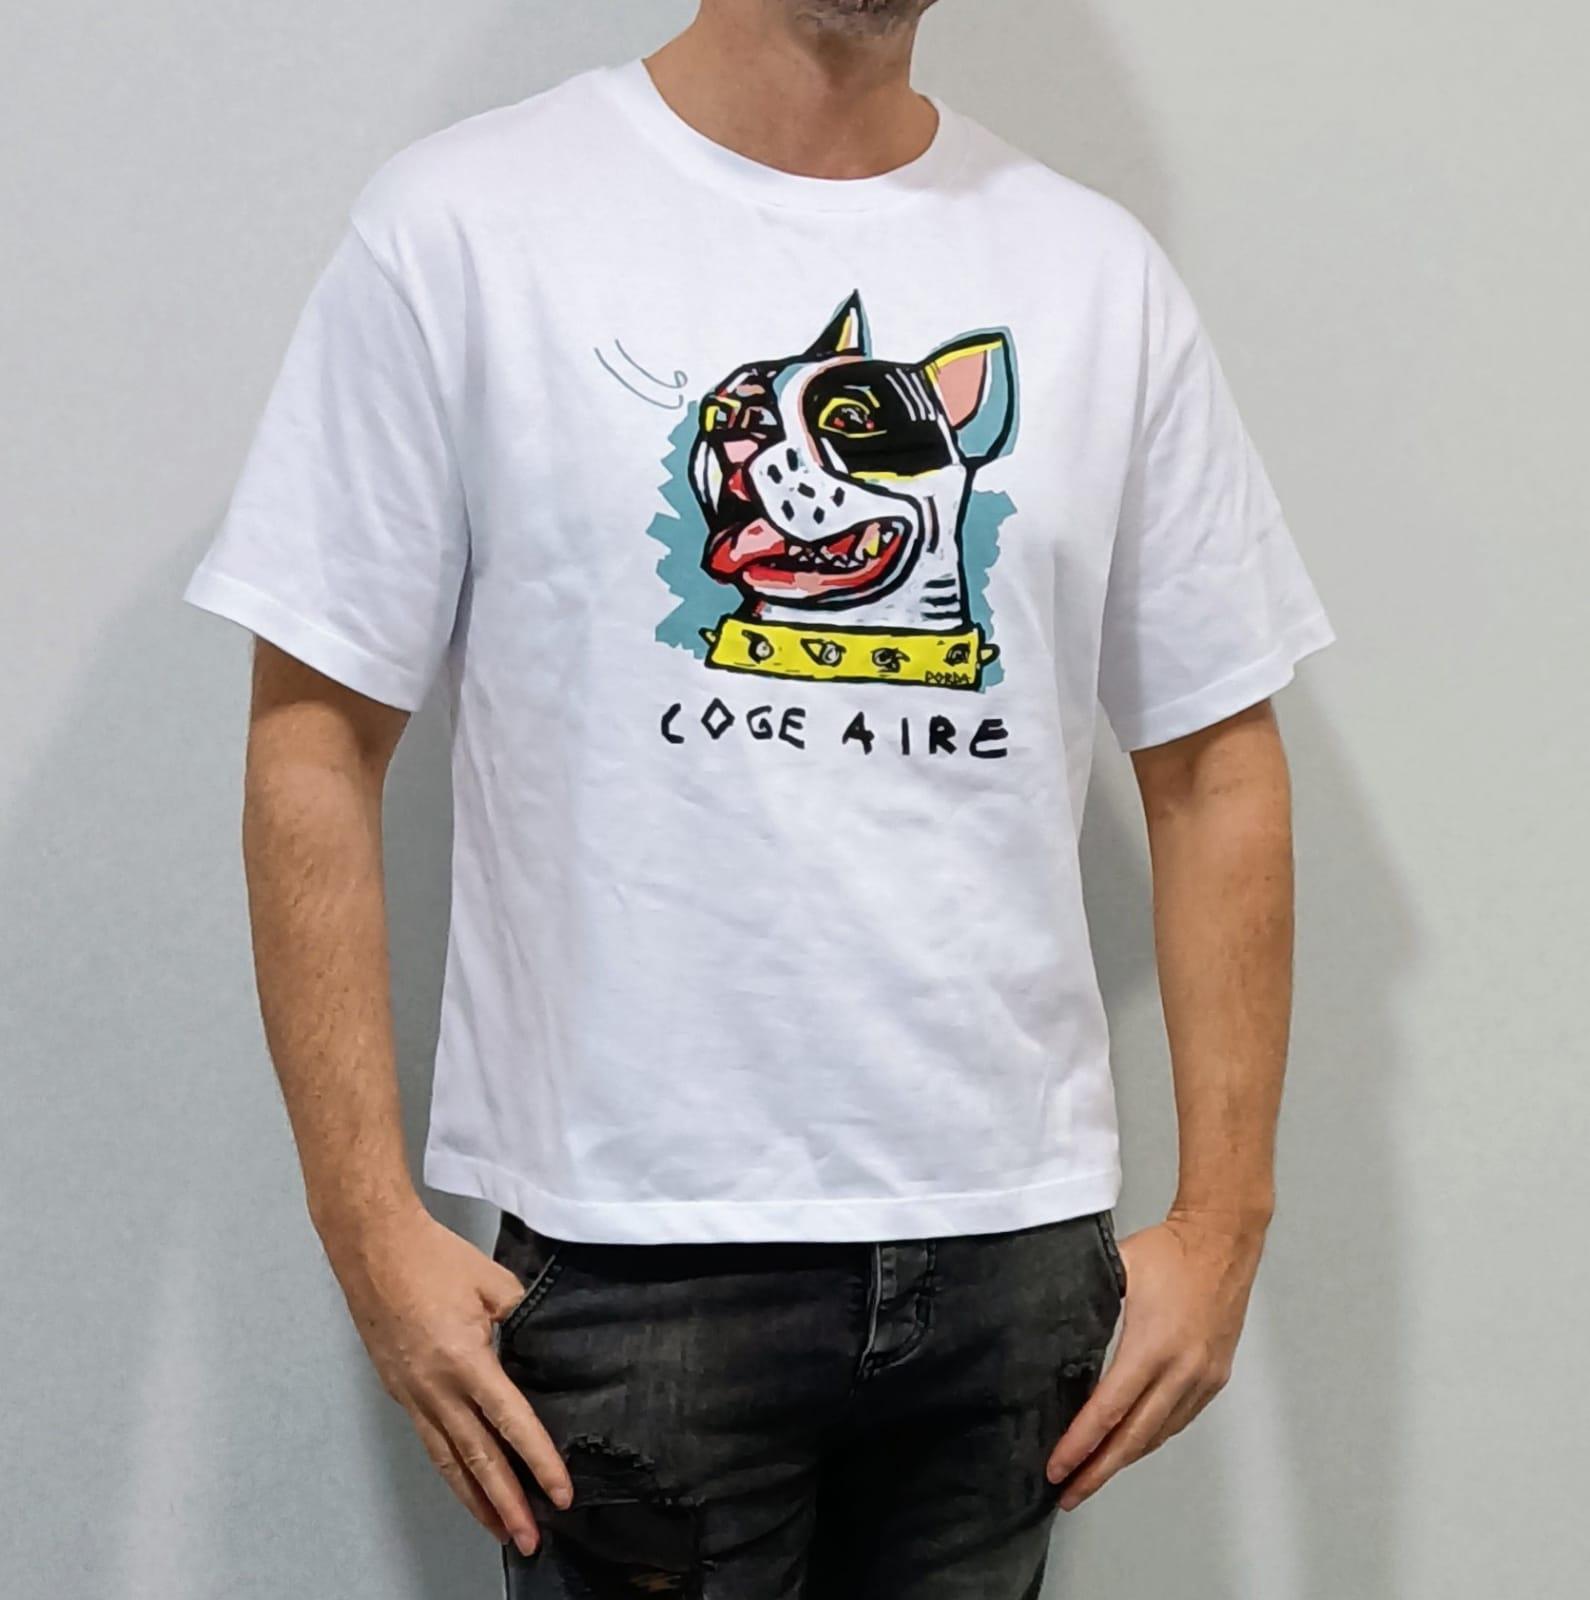 La camiseta de Coge aire con Pipo diseñada por Yolanda Dorda (Cedida).